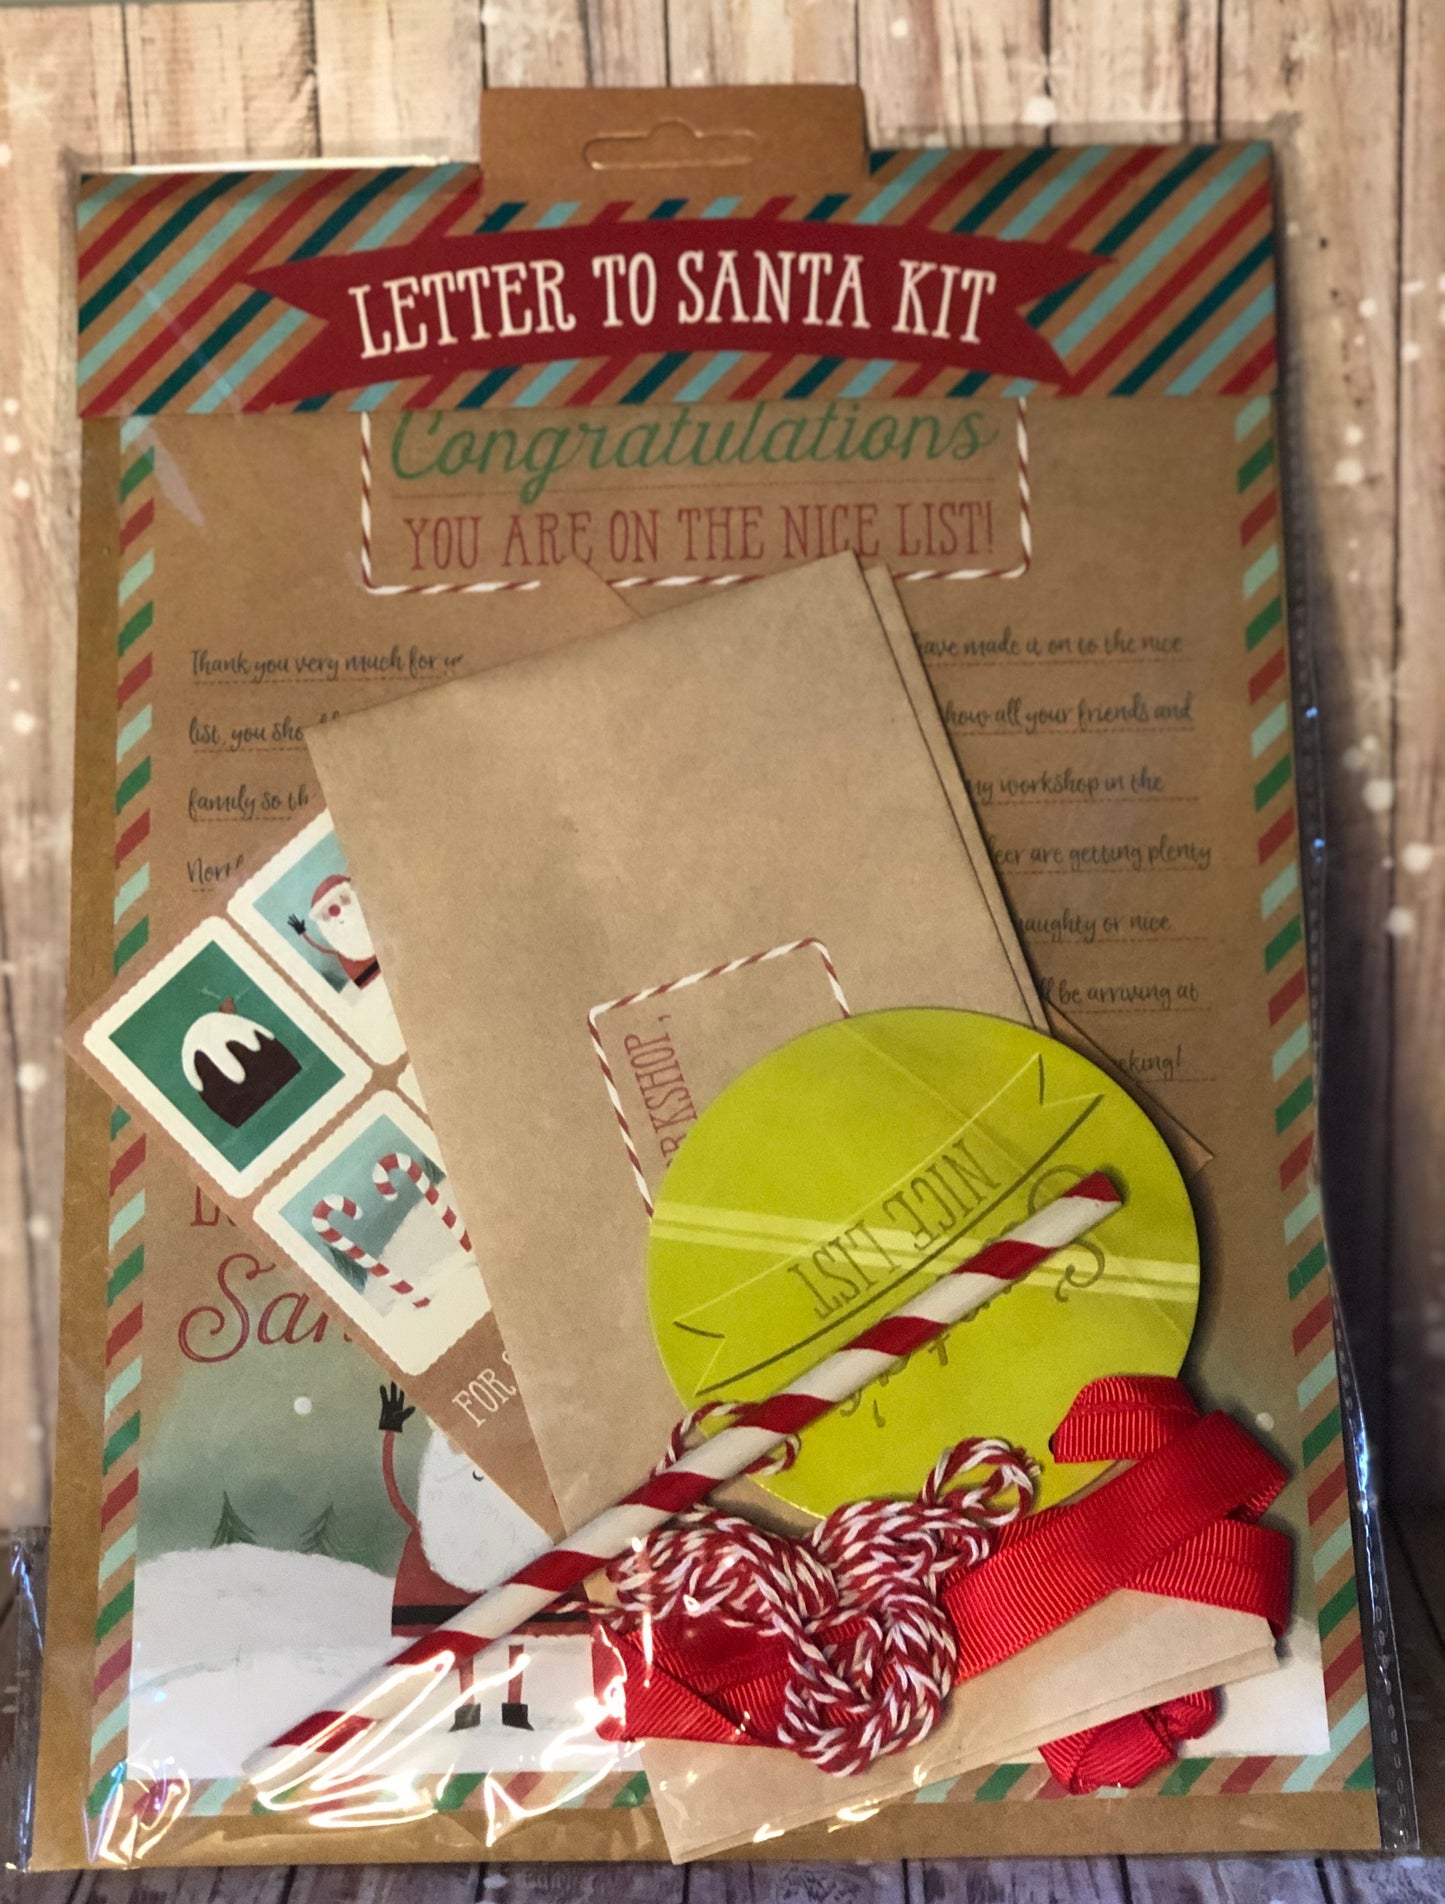 Letter to Santa Kit - Lilybet loves